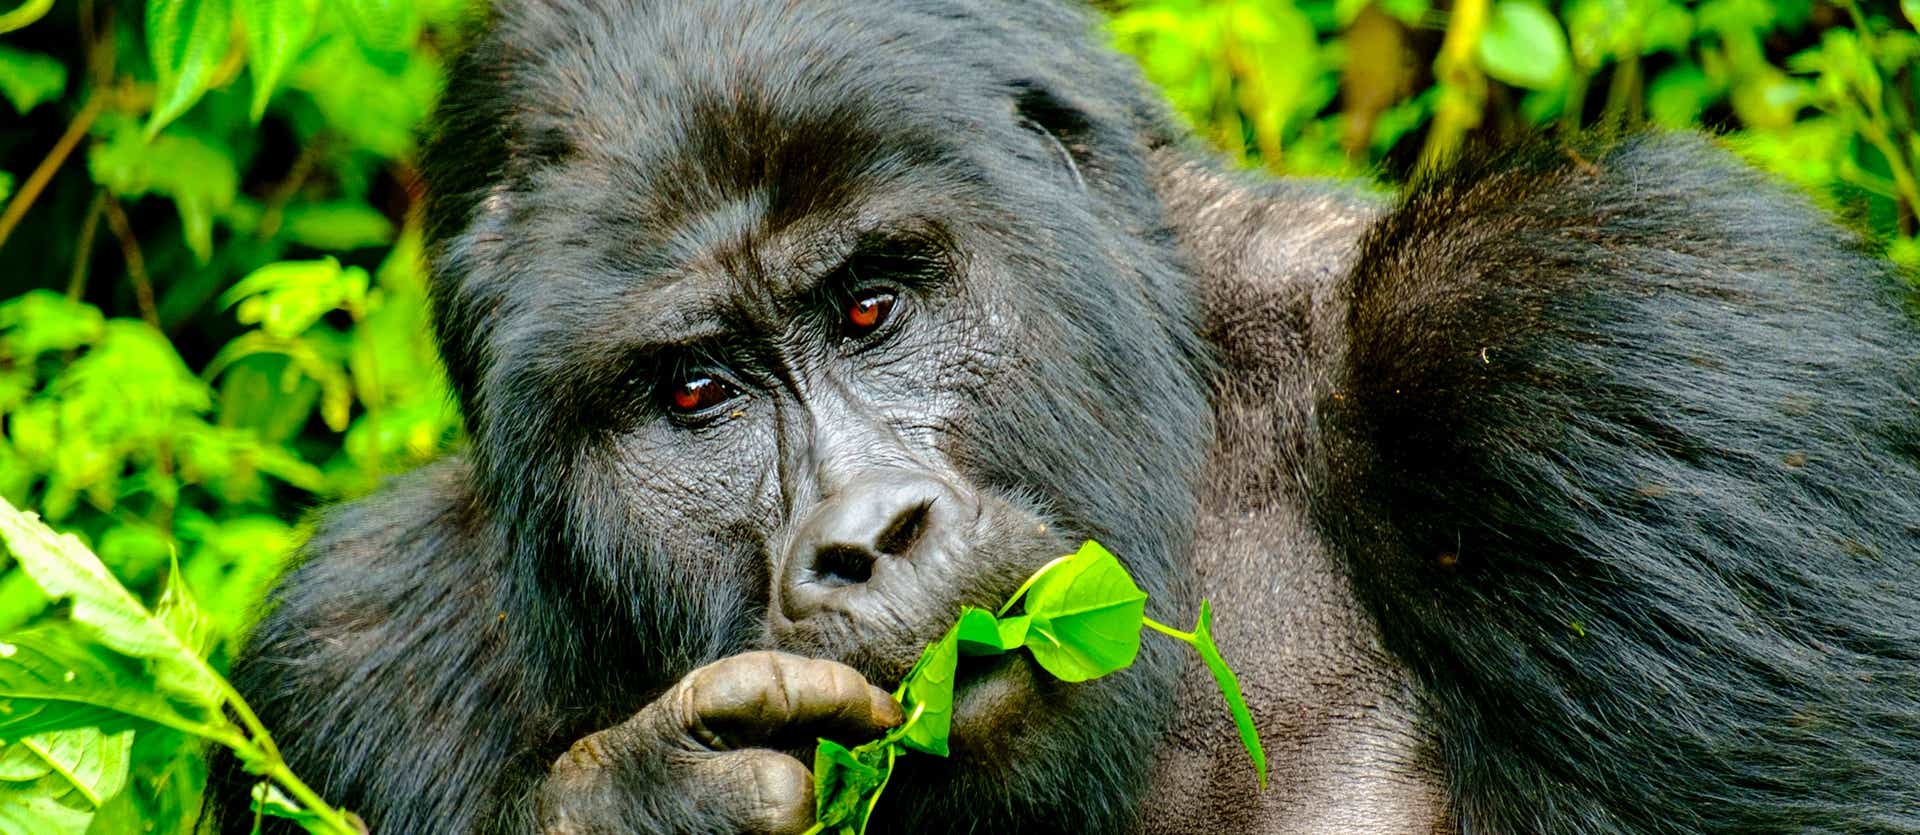 Mountain Gorilla <span class="iconos separador"></span> Bwindi Impenetrable National Park <span class="iconos separador"></span> Uganda